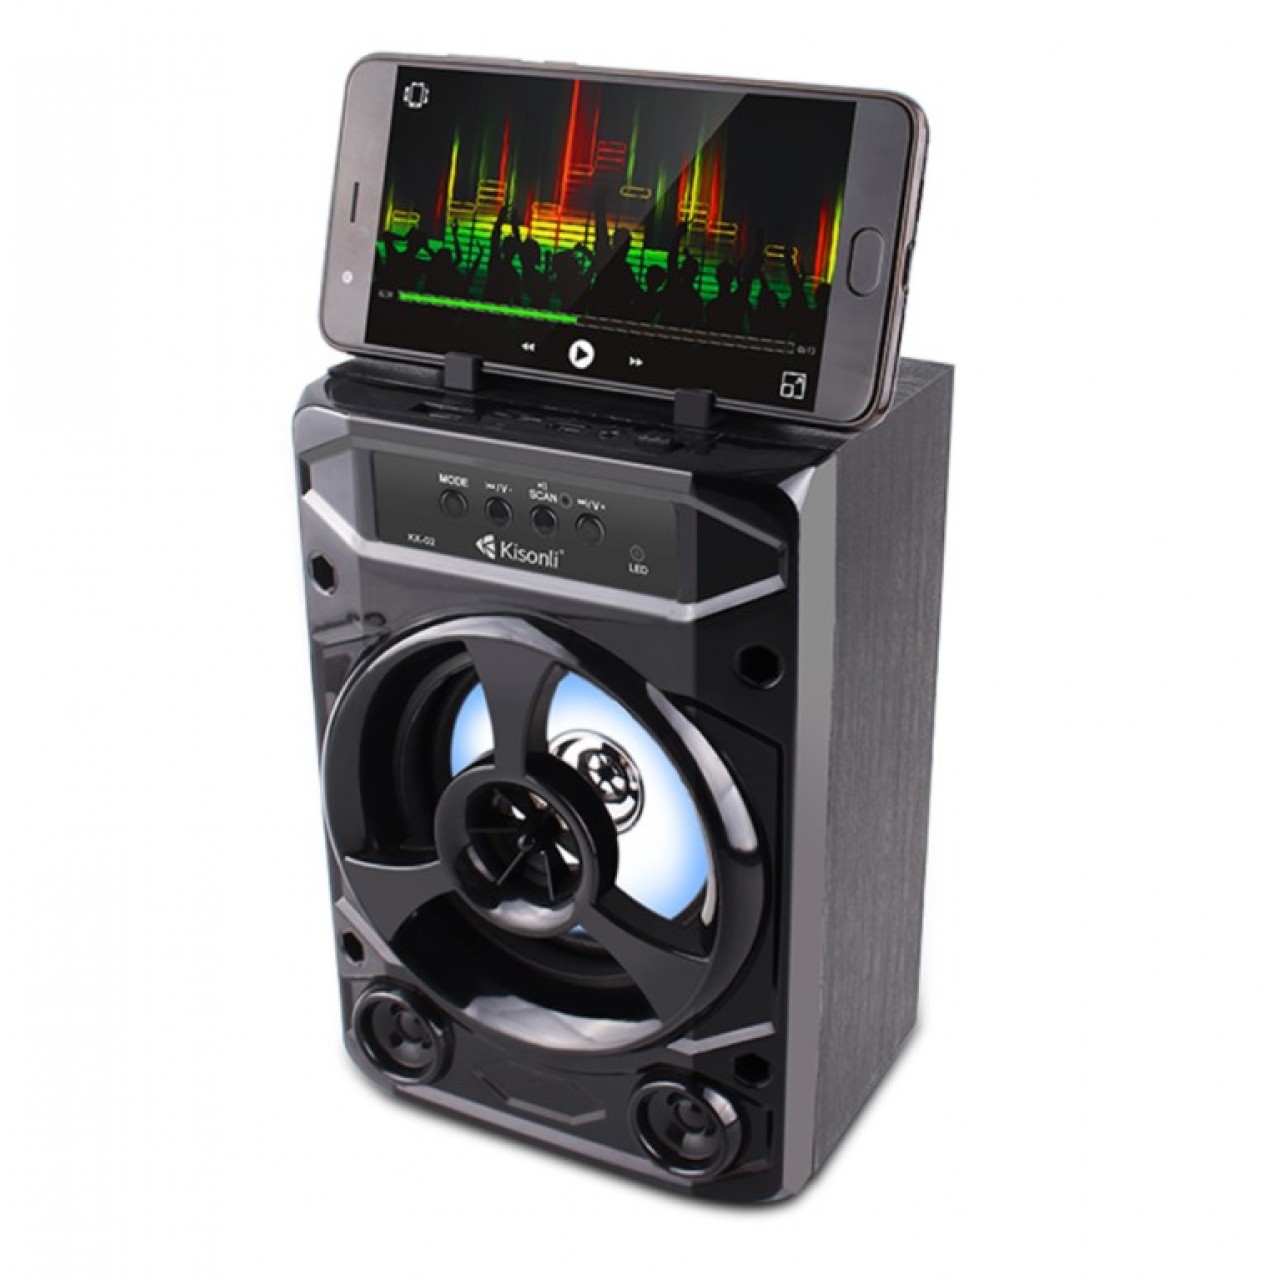 Speaker Kisonli KK-02, Bluetooth, USB, SD, FM - 5033 - Μαύρο